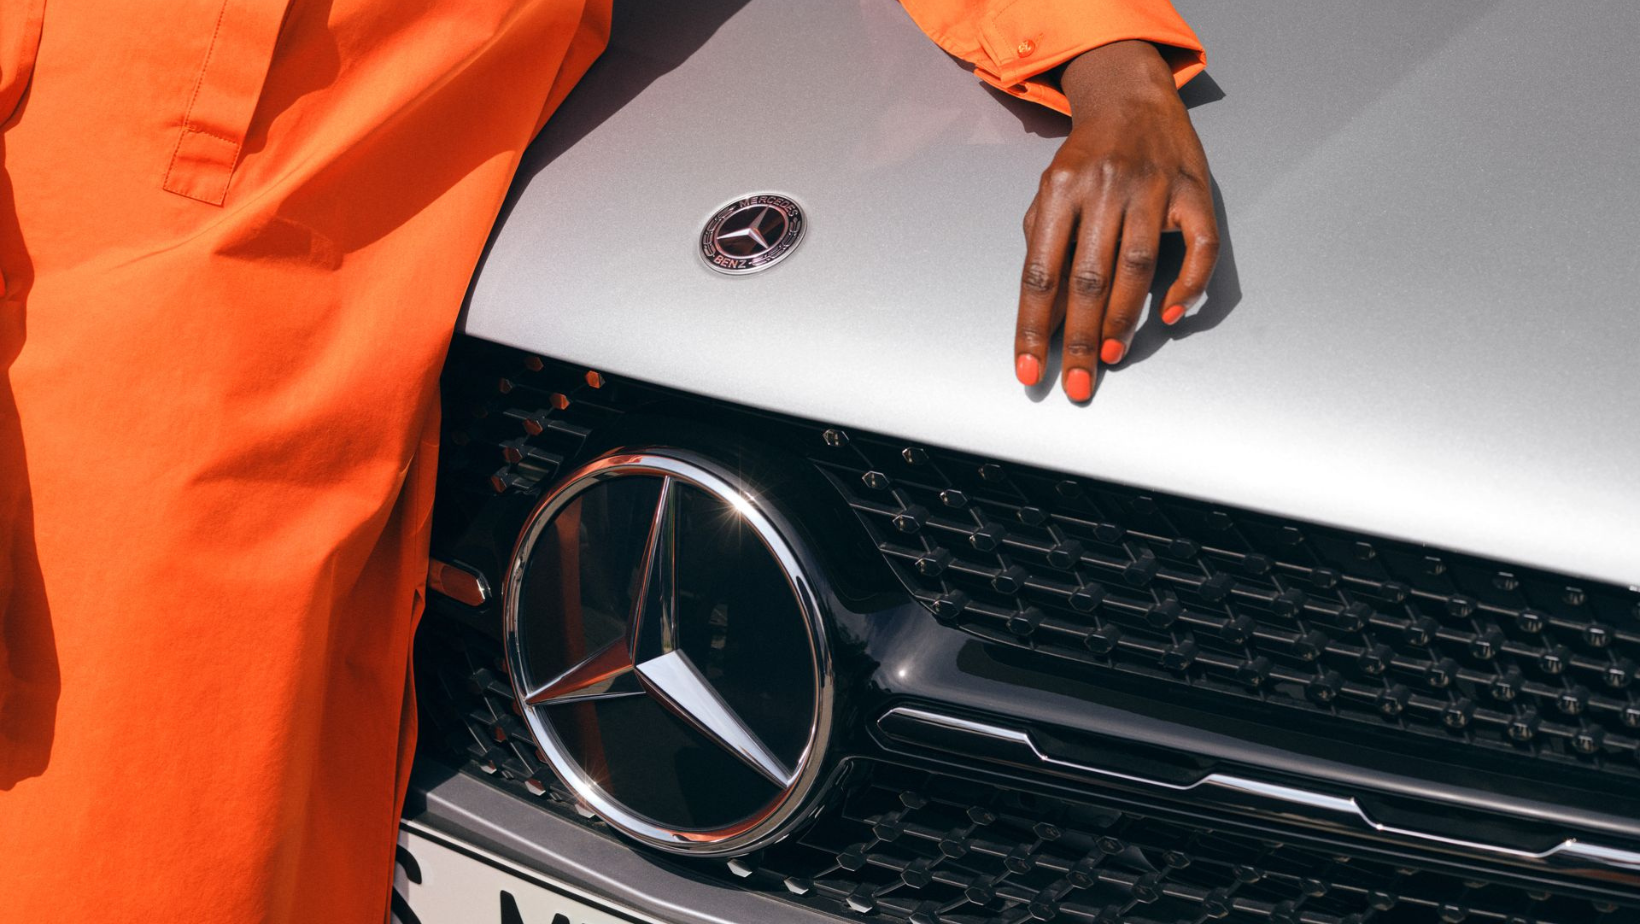 La photo met en avant l'avant d'un véhicule Mercedes-Benz, mettant en évidence le logo emblématique de la marque. Sur le capot, repose ce qui semble être le buste d'une femme, avec sa main délicatement posée à proximité du logo. Elle porte une tenue orange assortie à son vernis à ongles. Cette composition crée une esthétique captivante, mélangeant le design automobile de luxe avec une touche artistique et glamour, tout en mettant en valeur le logo emblématique de Mercedes-Benz.